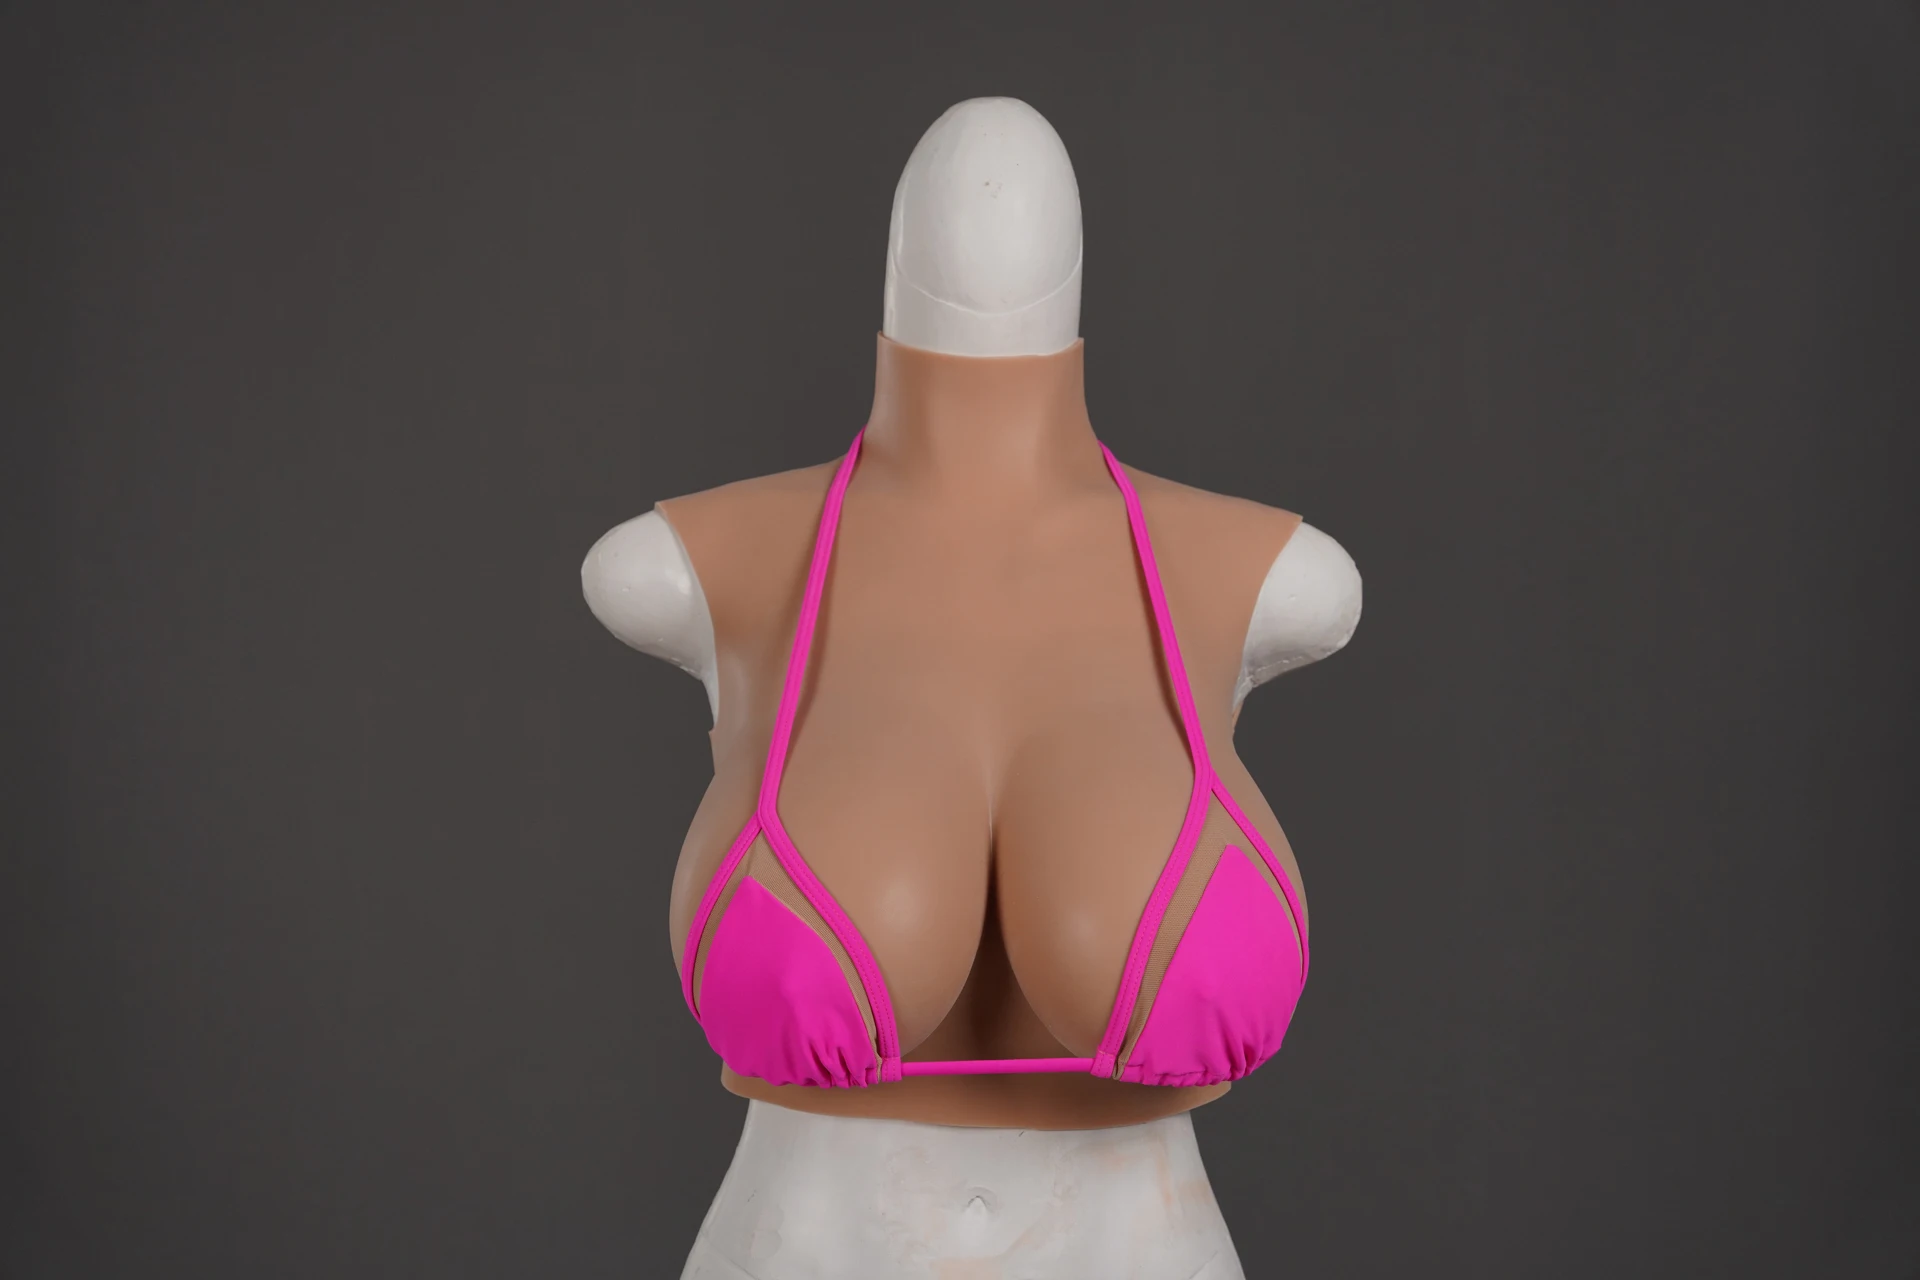 Новая-модернизация-abcdeg-высокий-воротник-искусственный-грудь-Реалистичная-силиконовая-форма-для-груди-Трансвестит-drag-queen